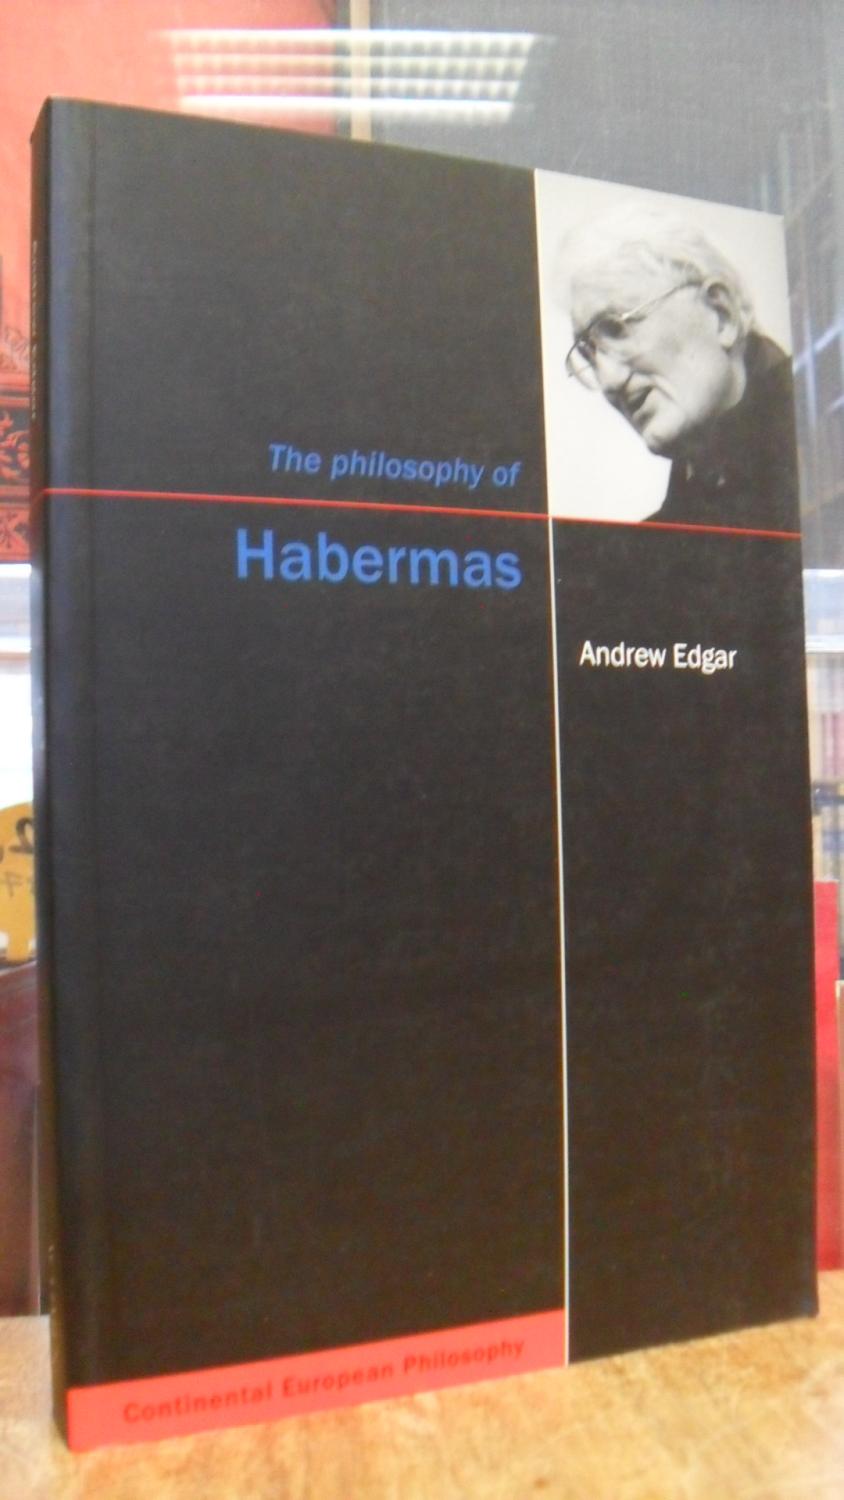 The Philosophy of Habermas, - Habermas, Jürgen / Andrew Edgar,